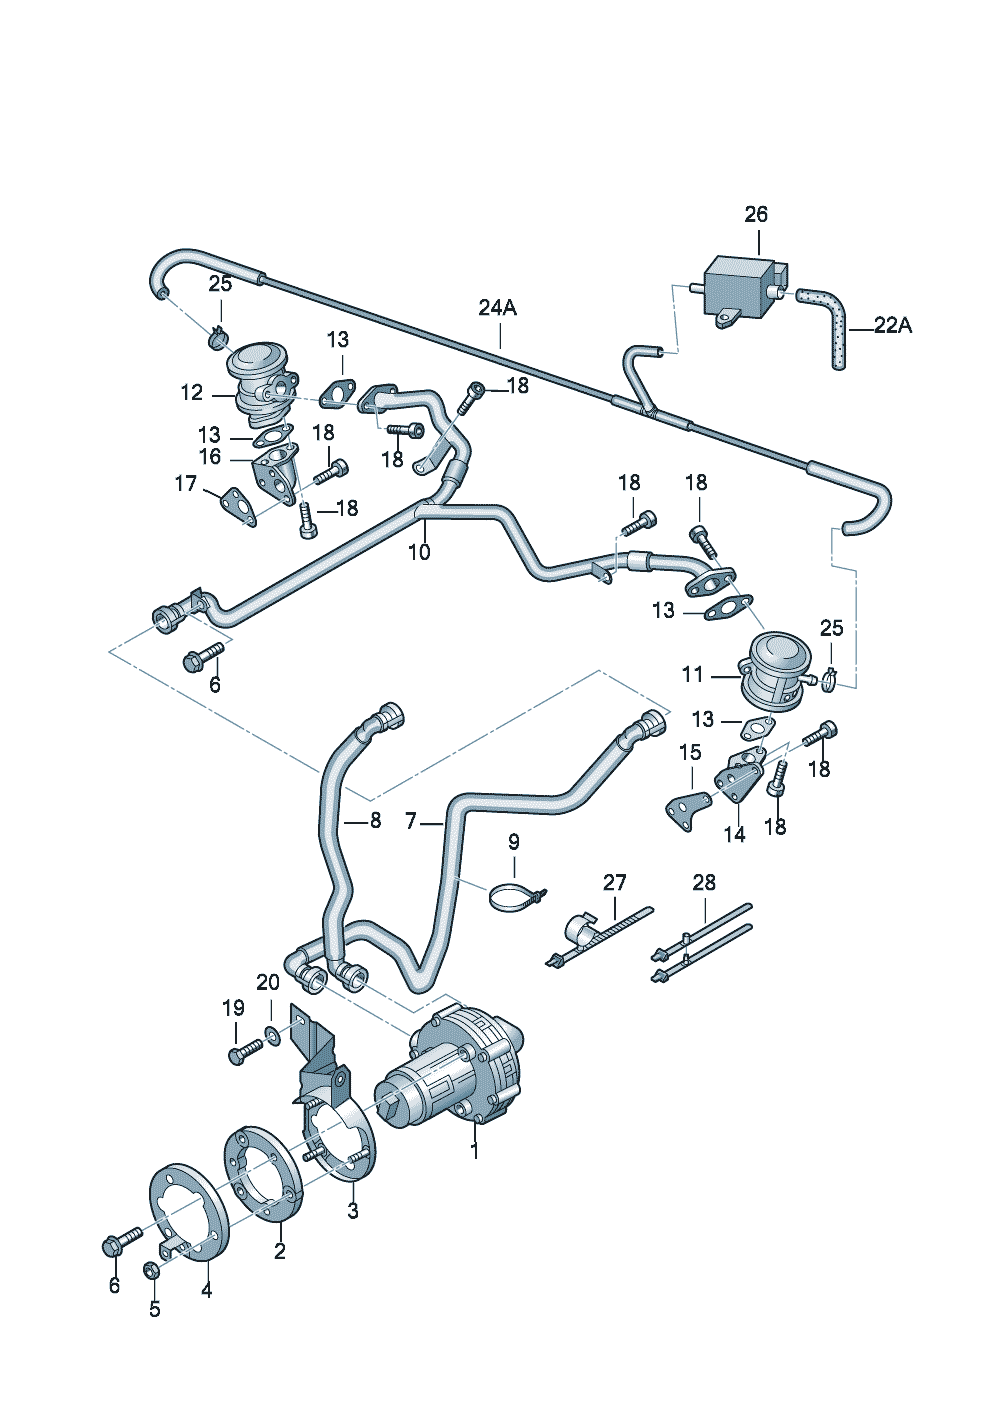 Secondary air pump 2.8 Ltr. - Audi A4/S4/Avant - a4q